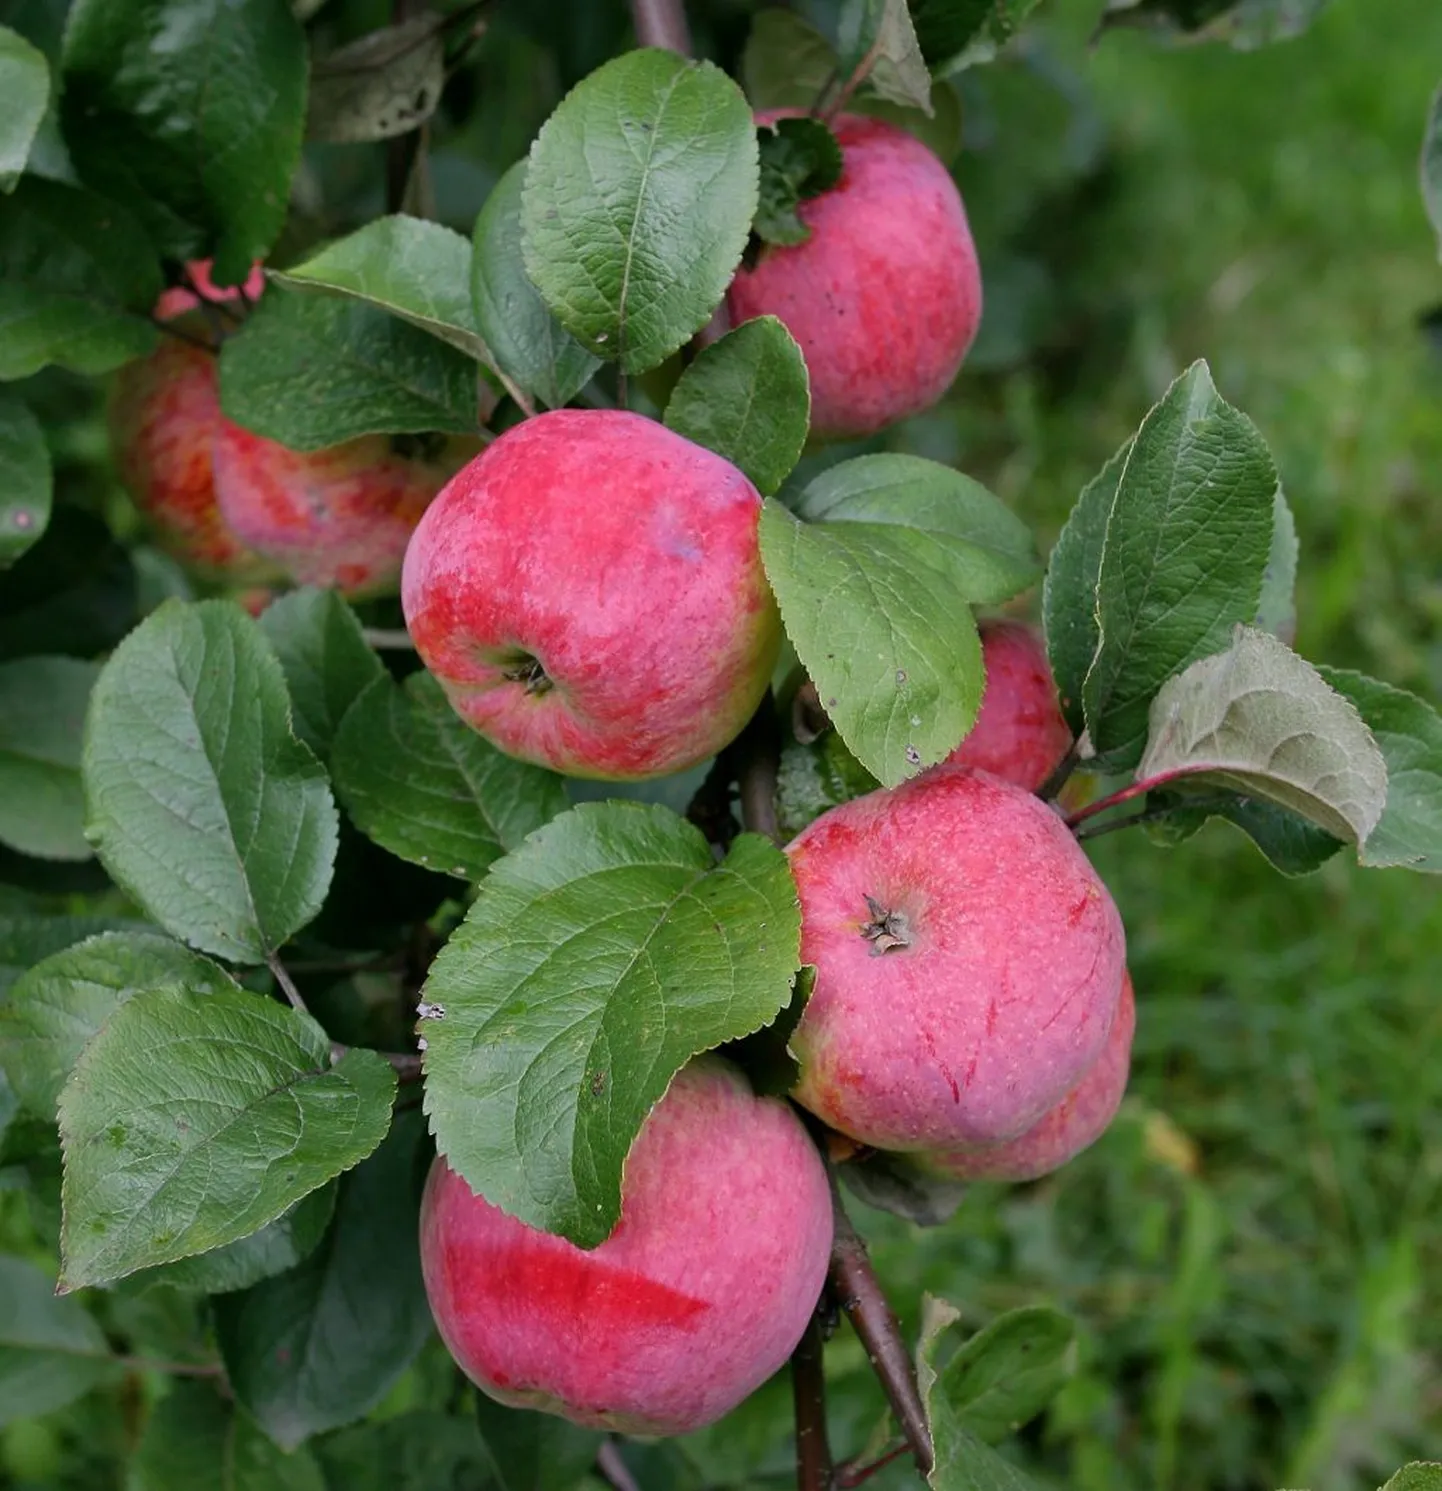 70 aastat õunakasvatusega tegelenud Eero Lõhmuste ennustab tänavu head õuna-aastat.